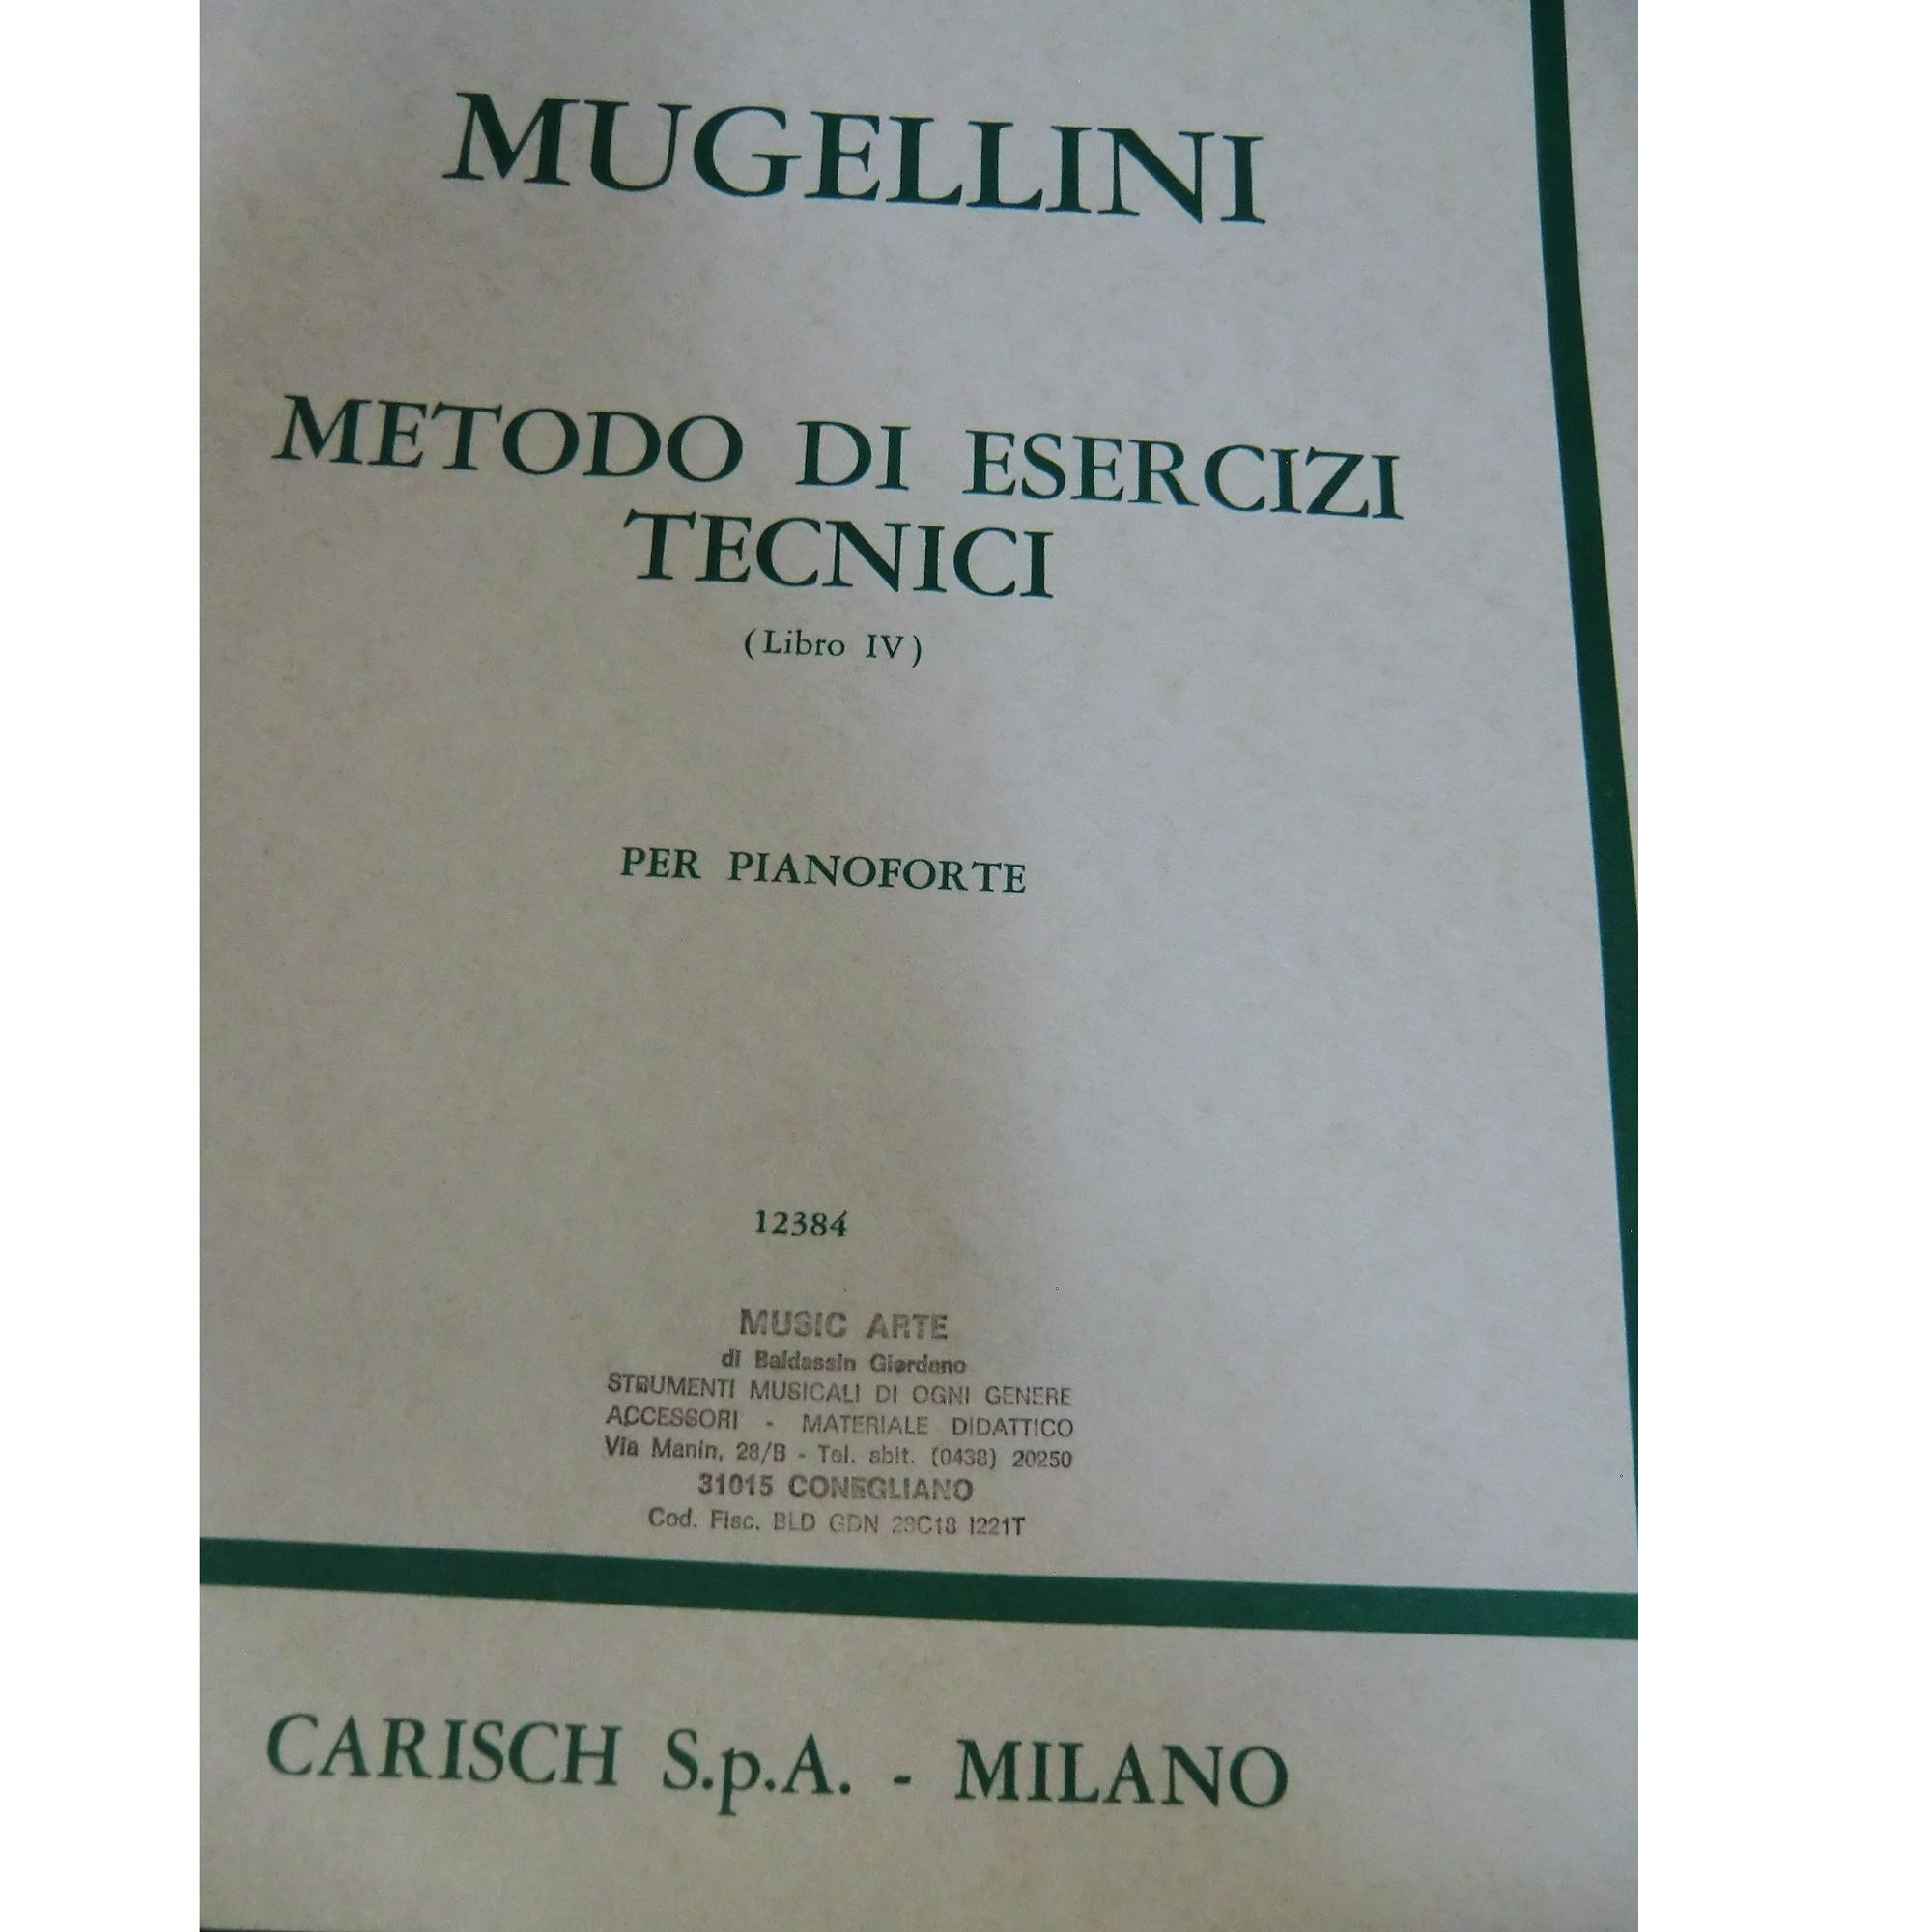 Mugellini Metodo di esercizi tecnici (Libro lV) per pianoforte - Carisch S.p.A. Milano 